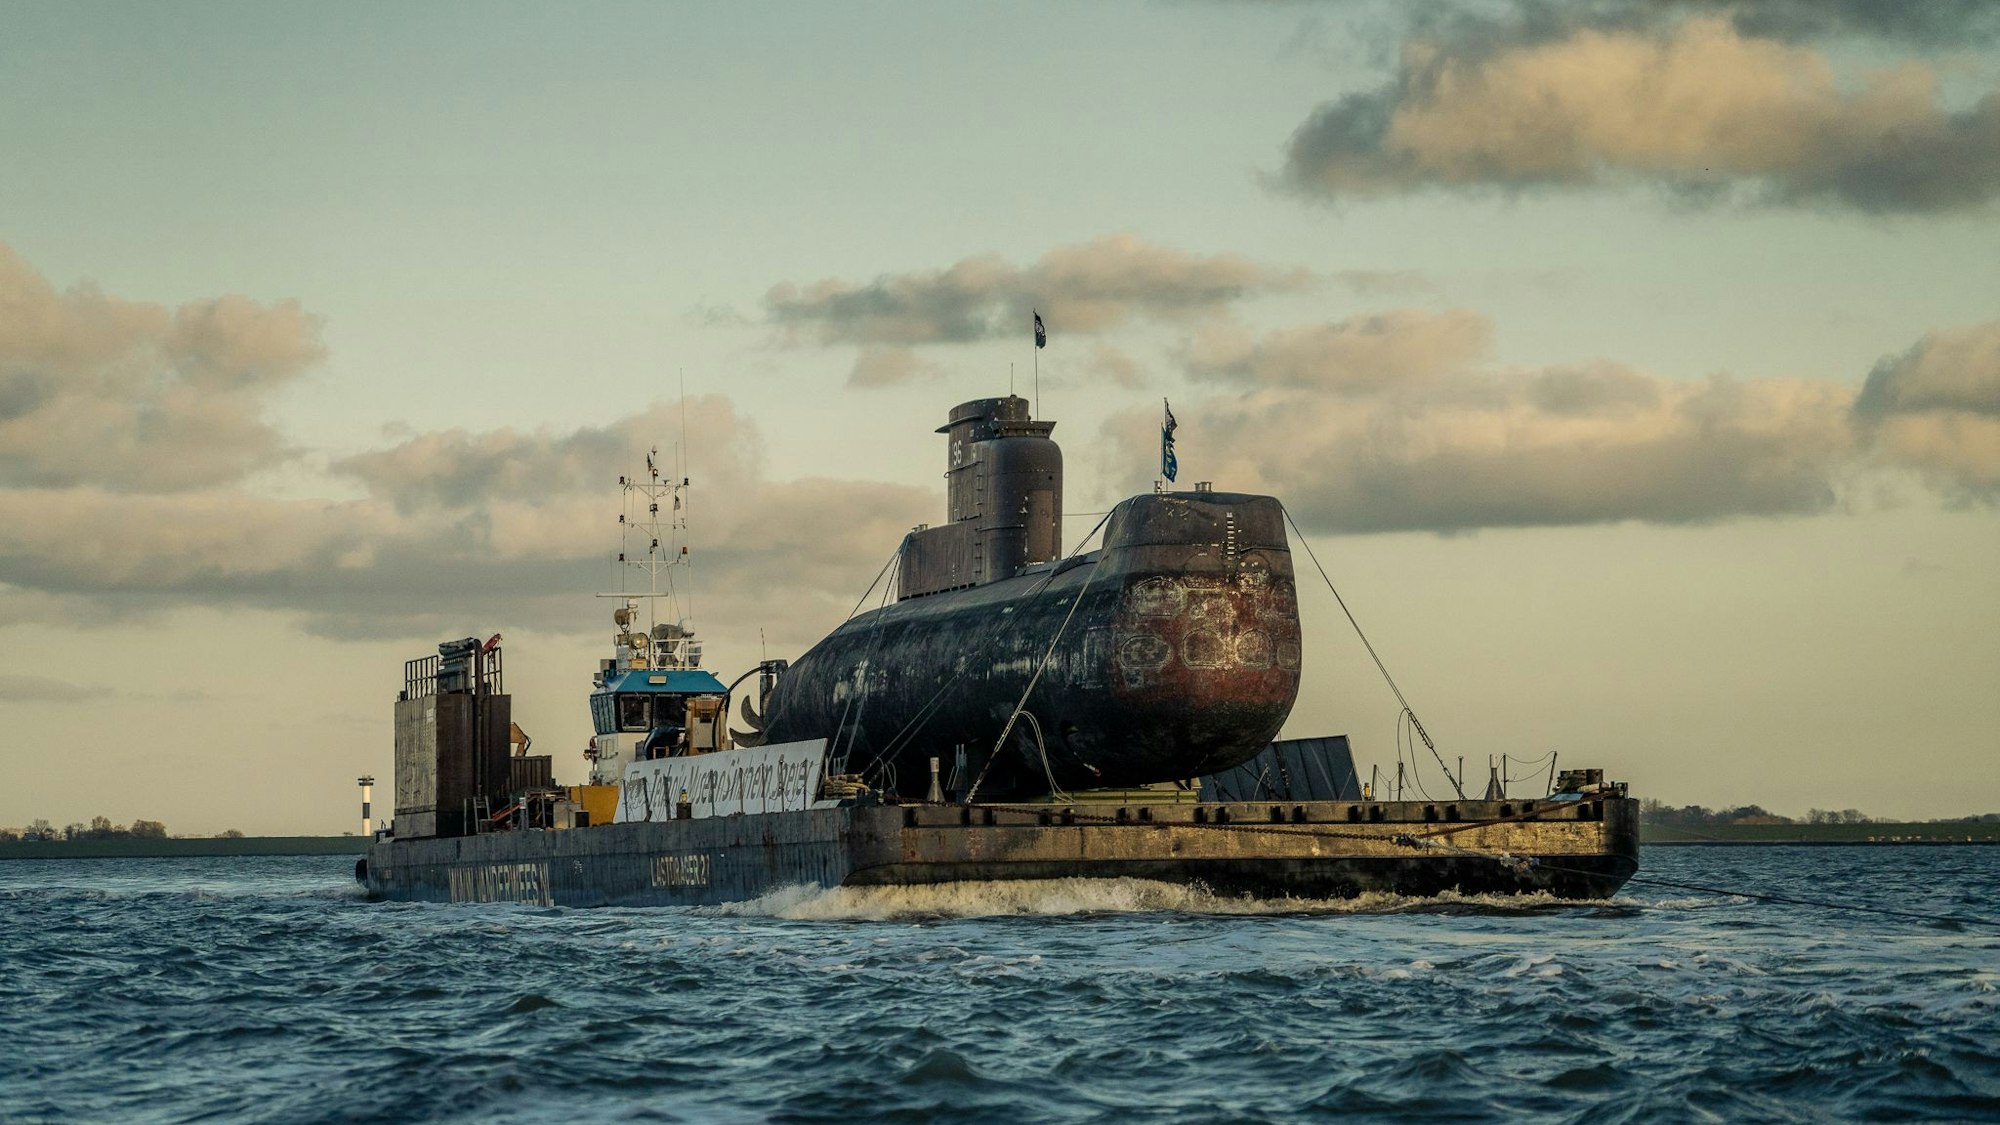 Auf dem Foto ist das U-Boot, das auf einem 85 Meter langen Schwimmponton transportiert wird, zu sehen.